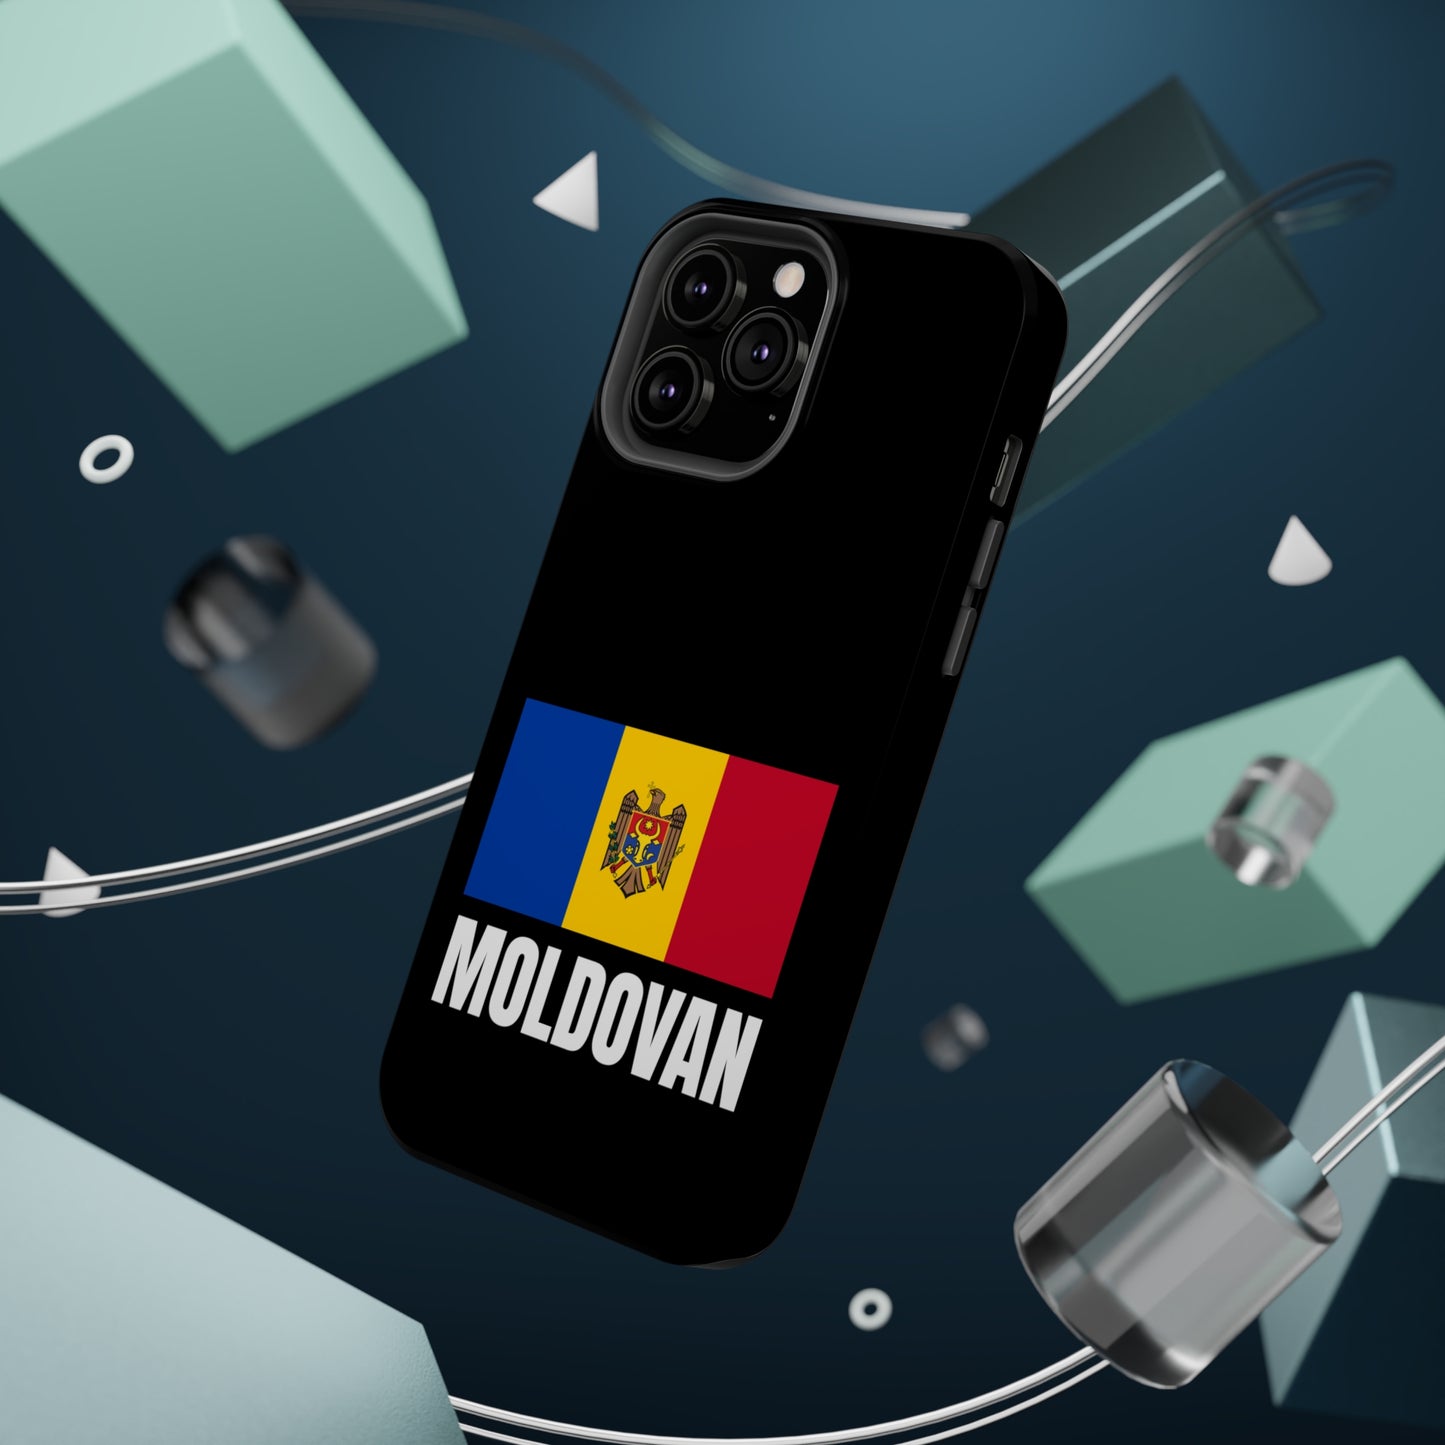 Moldovan MagSafe Tough Cases